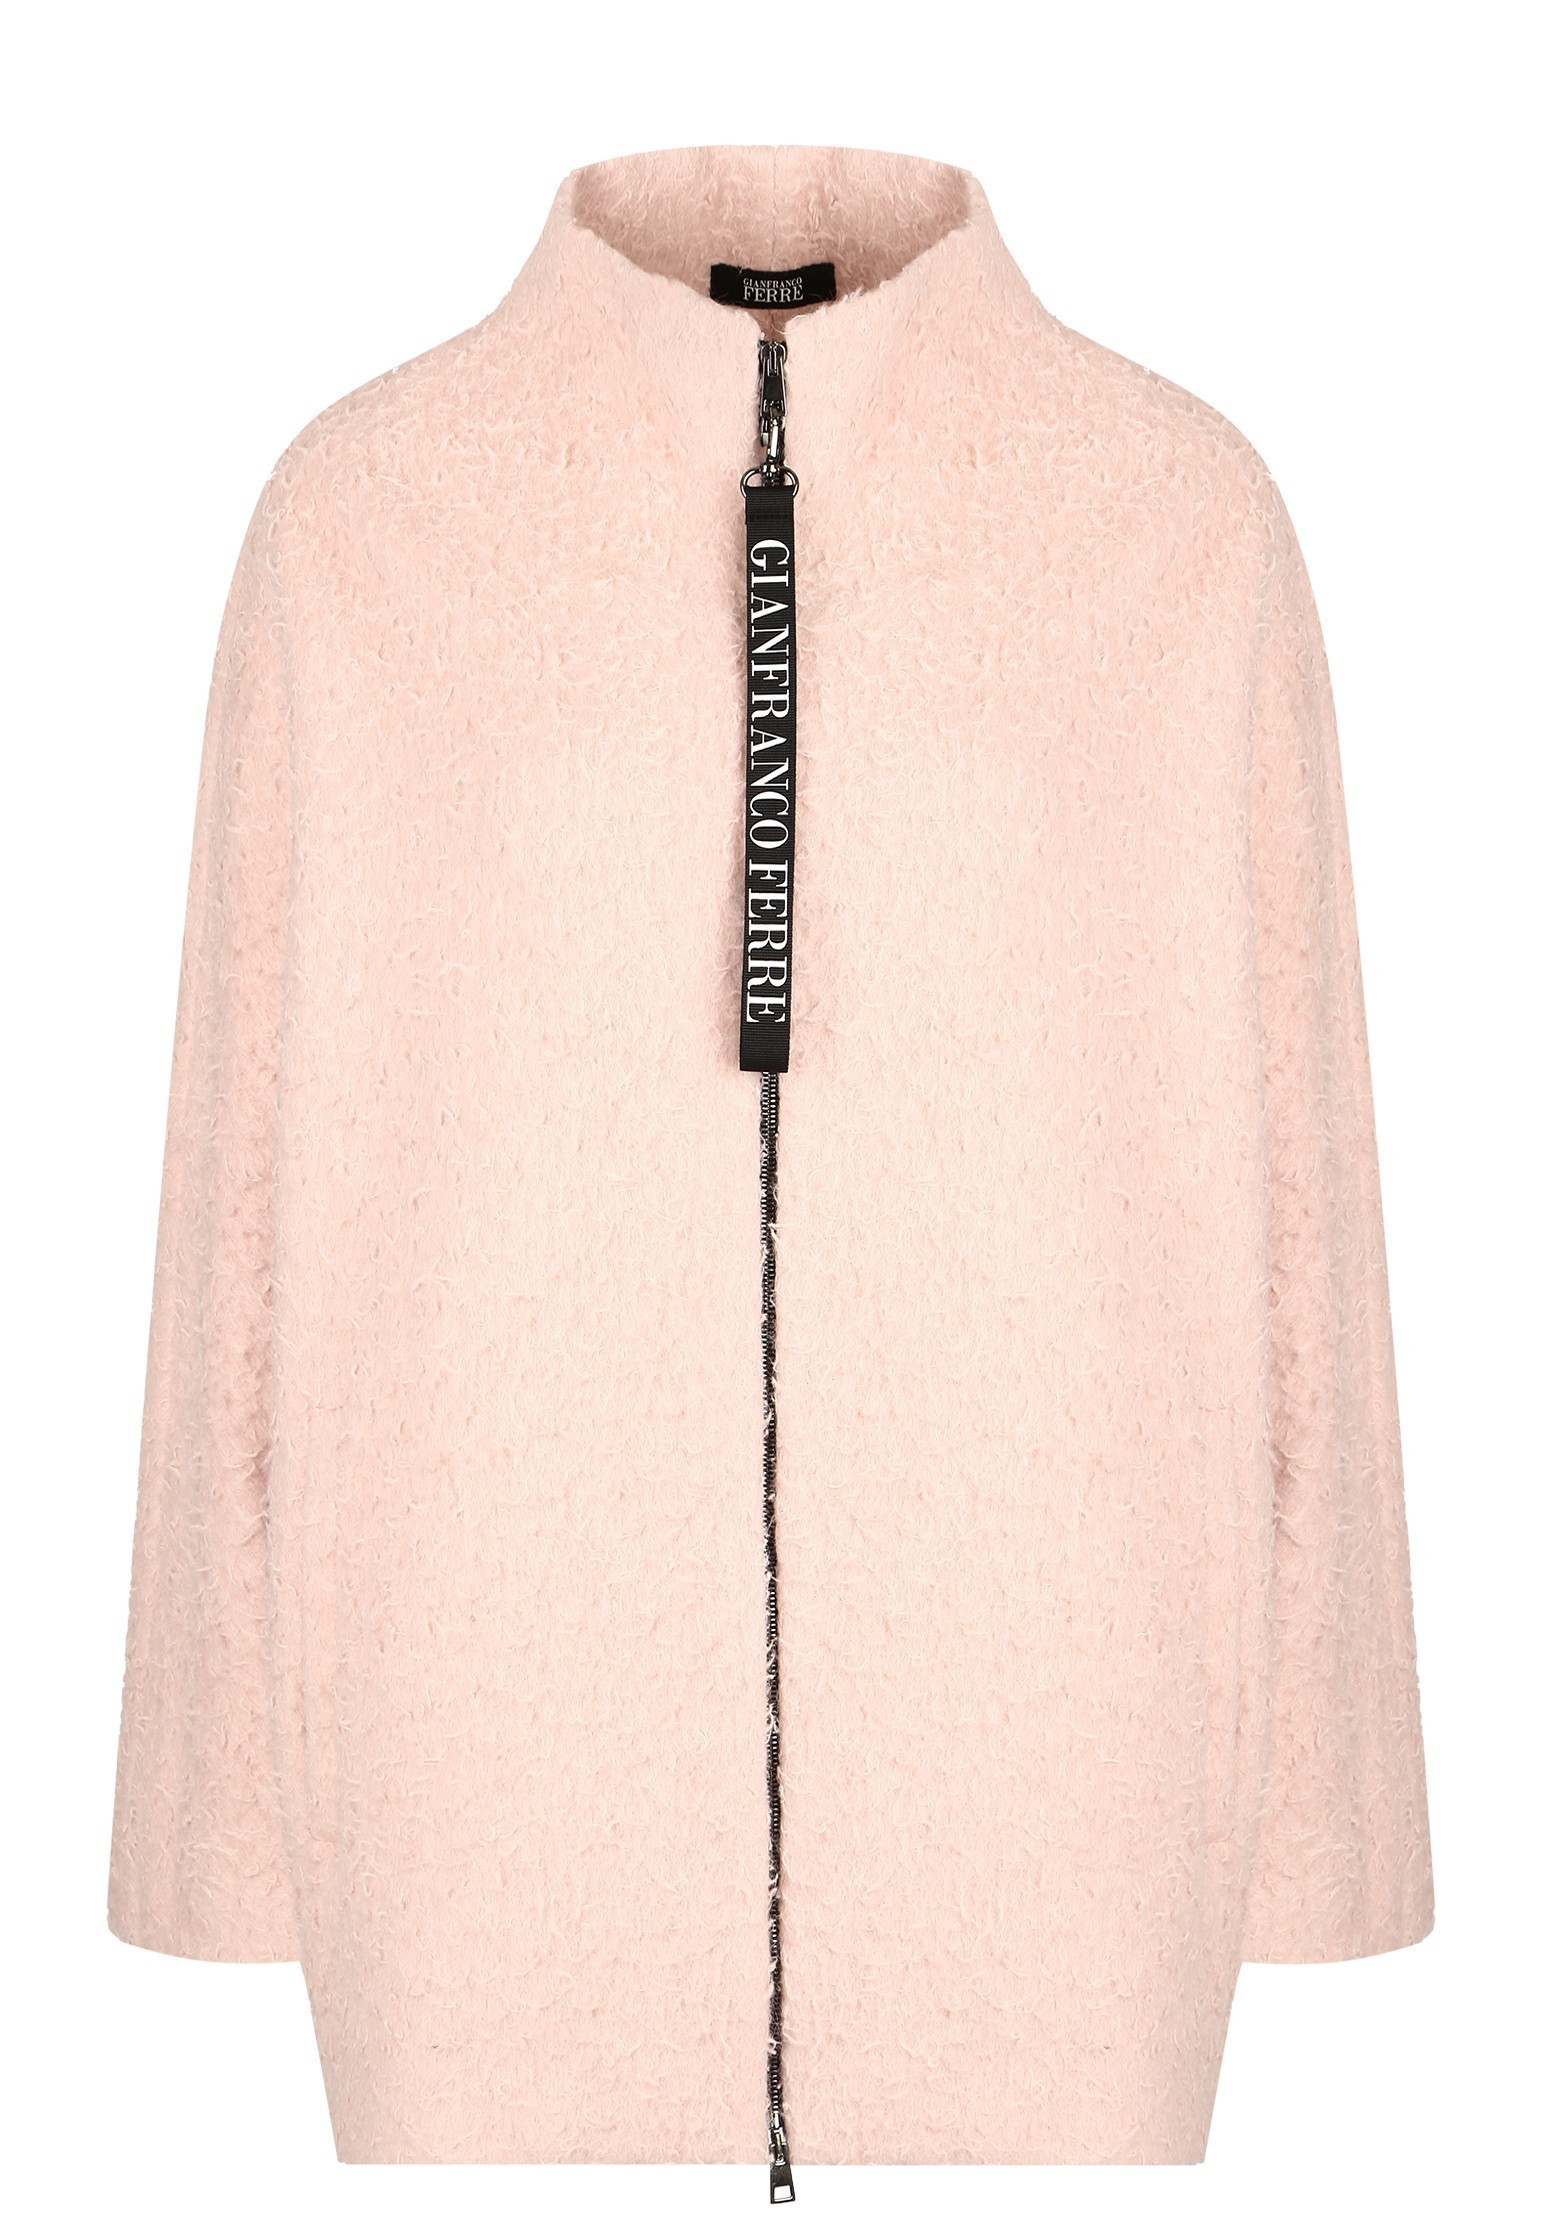 Пальто женское Gianfranco Ferre 130702 розовое M